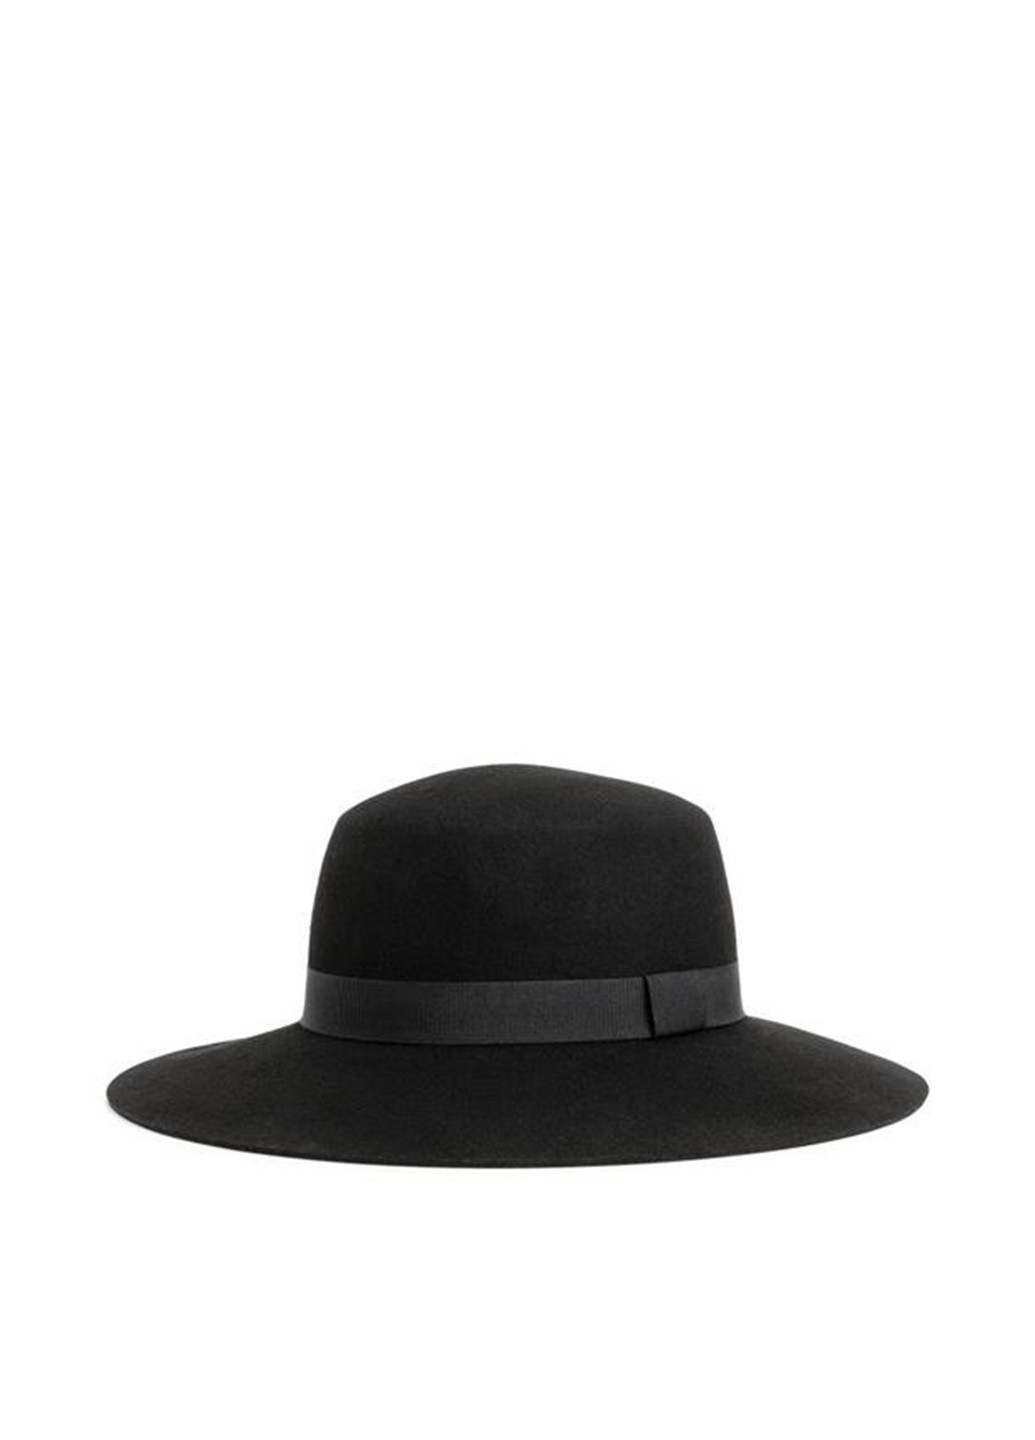 Шляпа H&M однотонная чёрная кэжуал